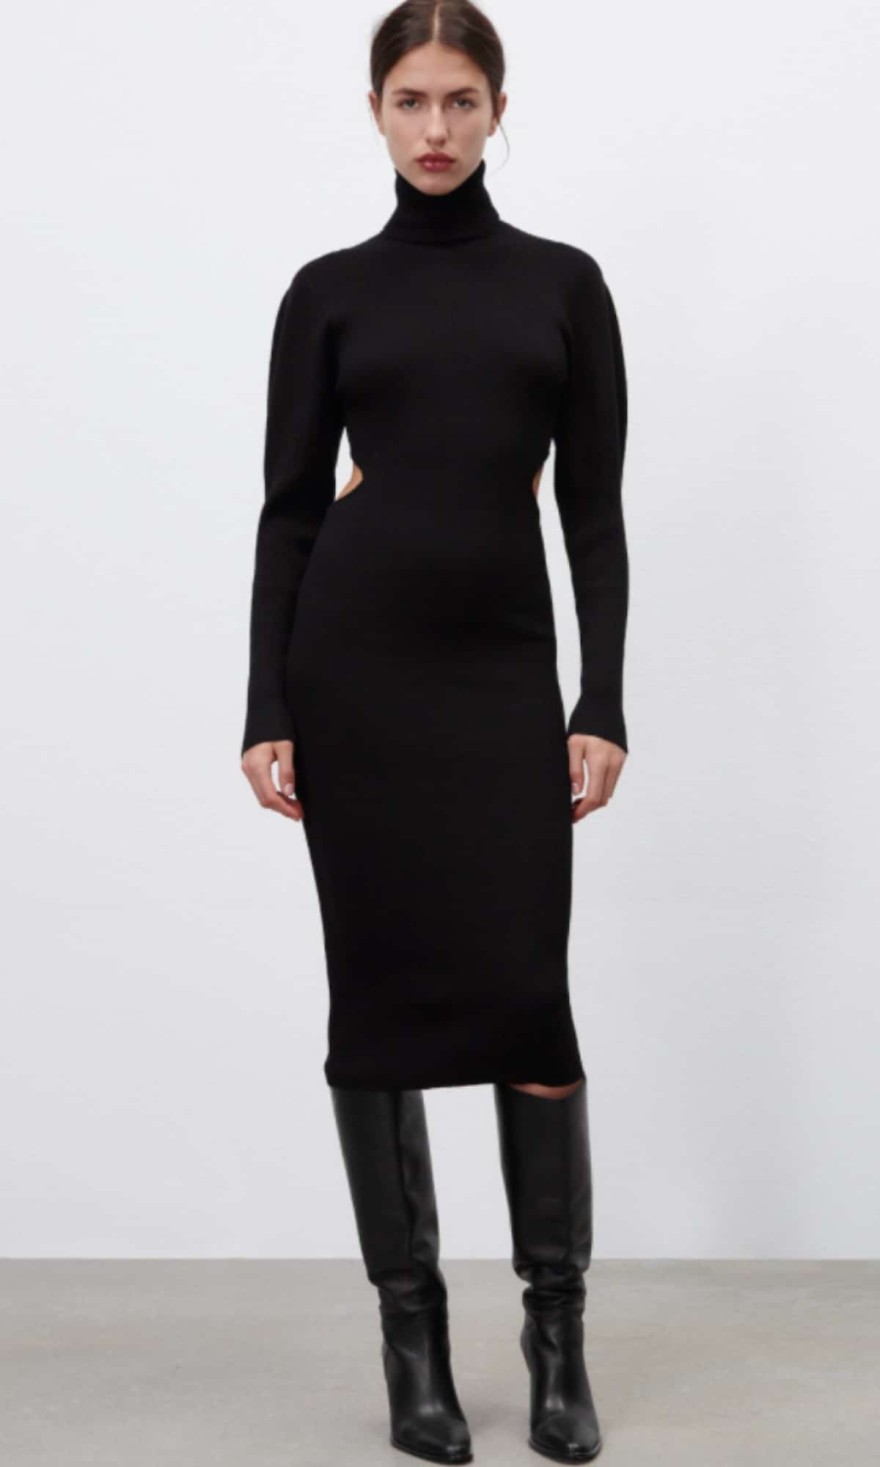 Μαύρο κολλητό φόρεμα από τα Zara